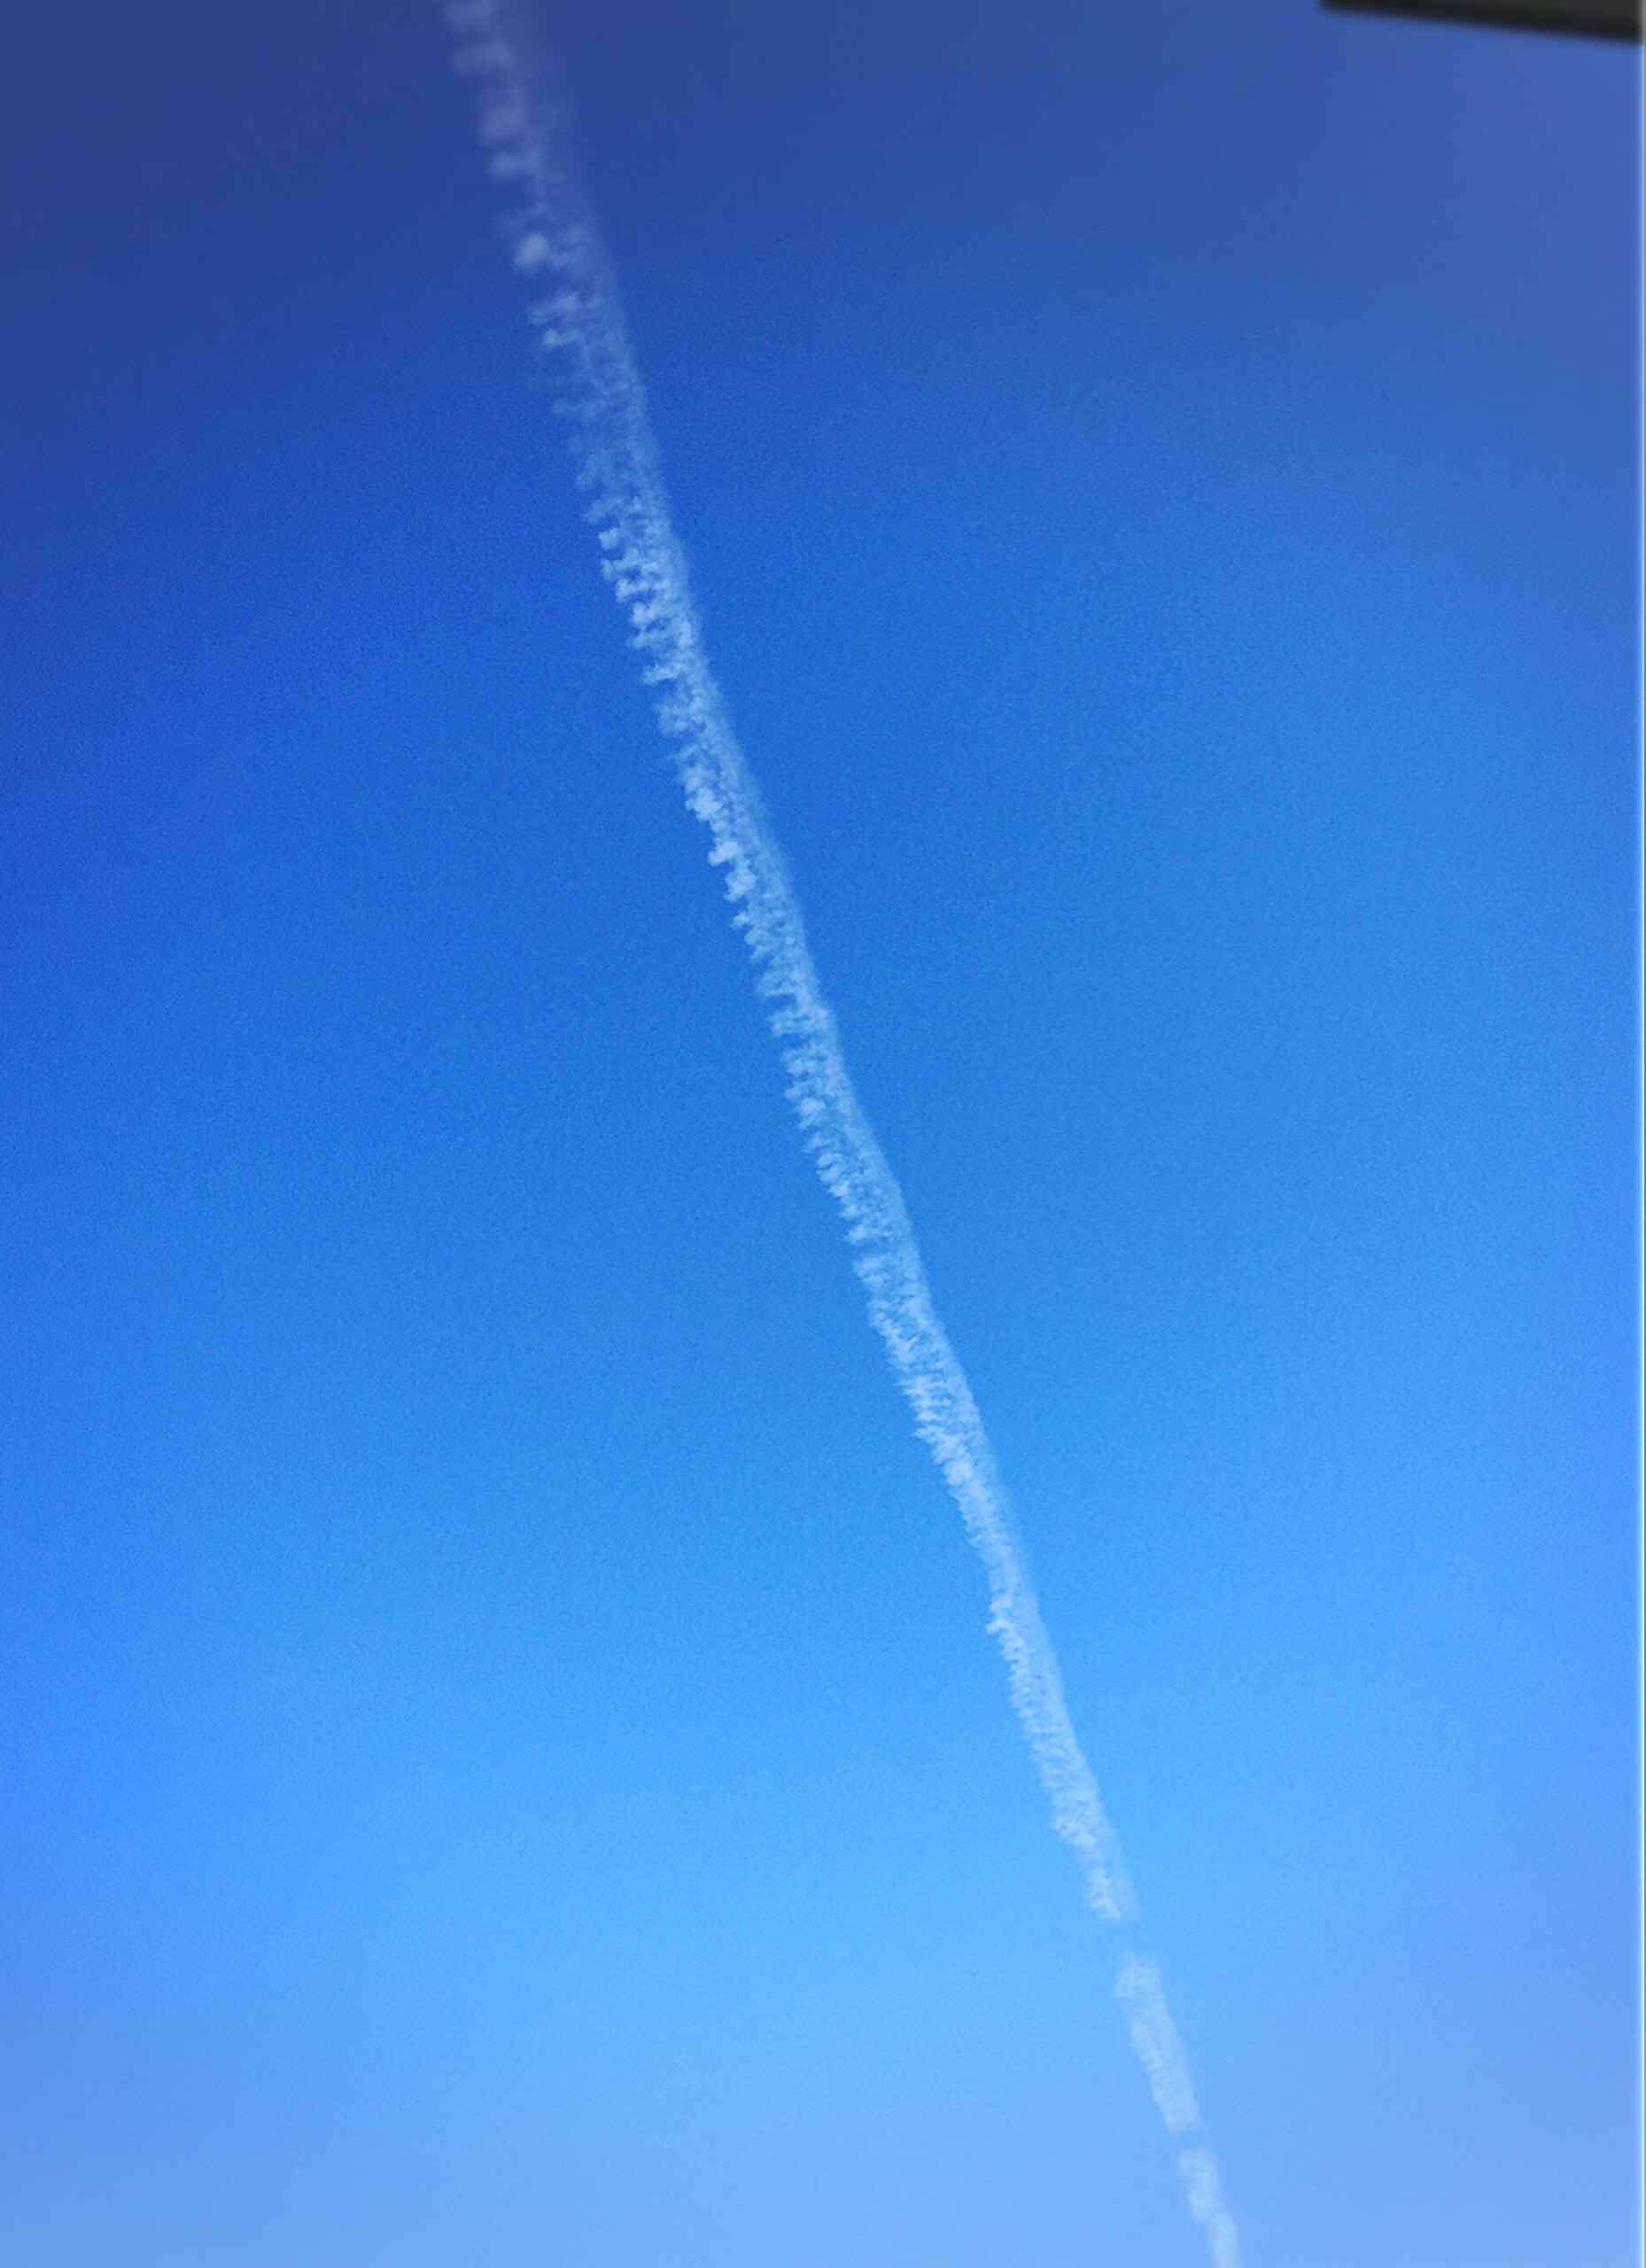 営業日最終日に青空に飛行機雲が現れました。